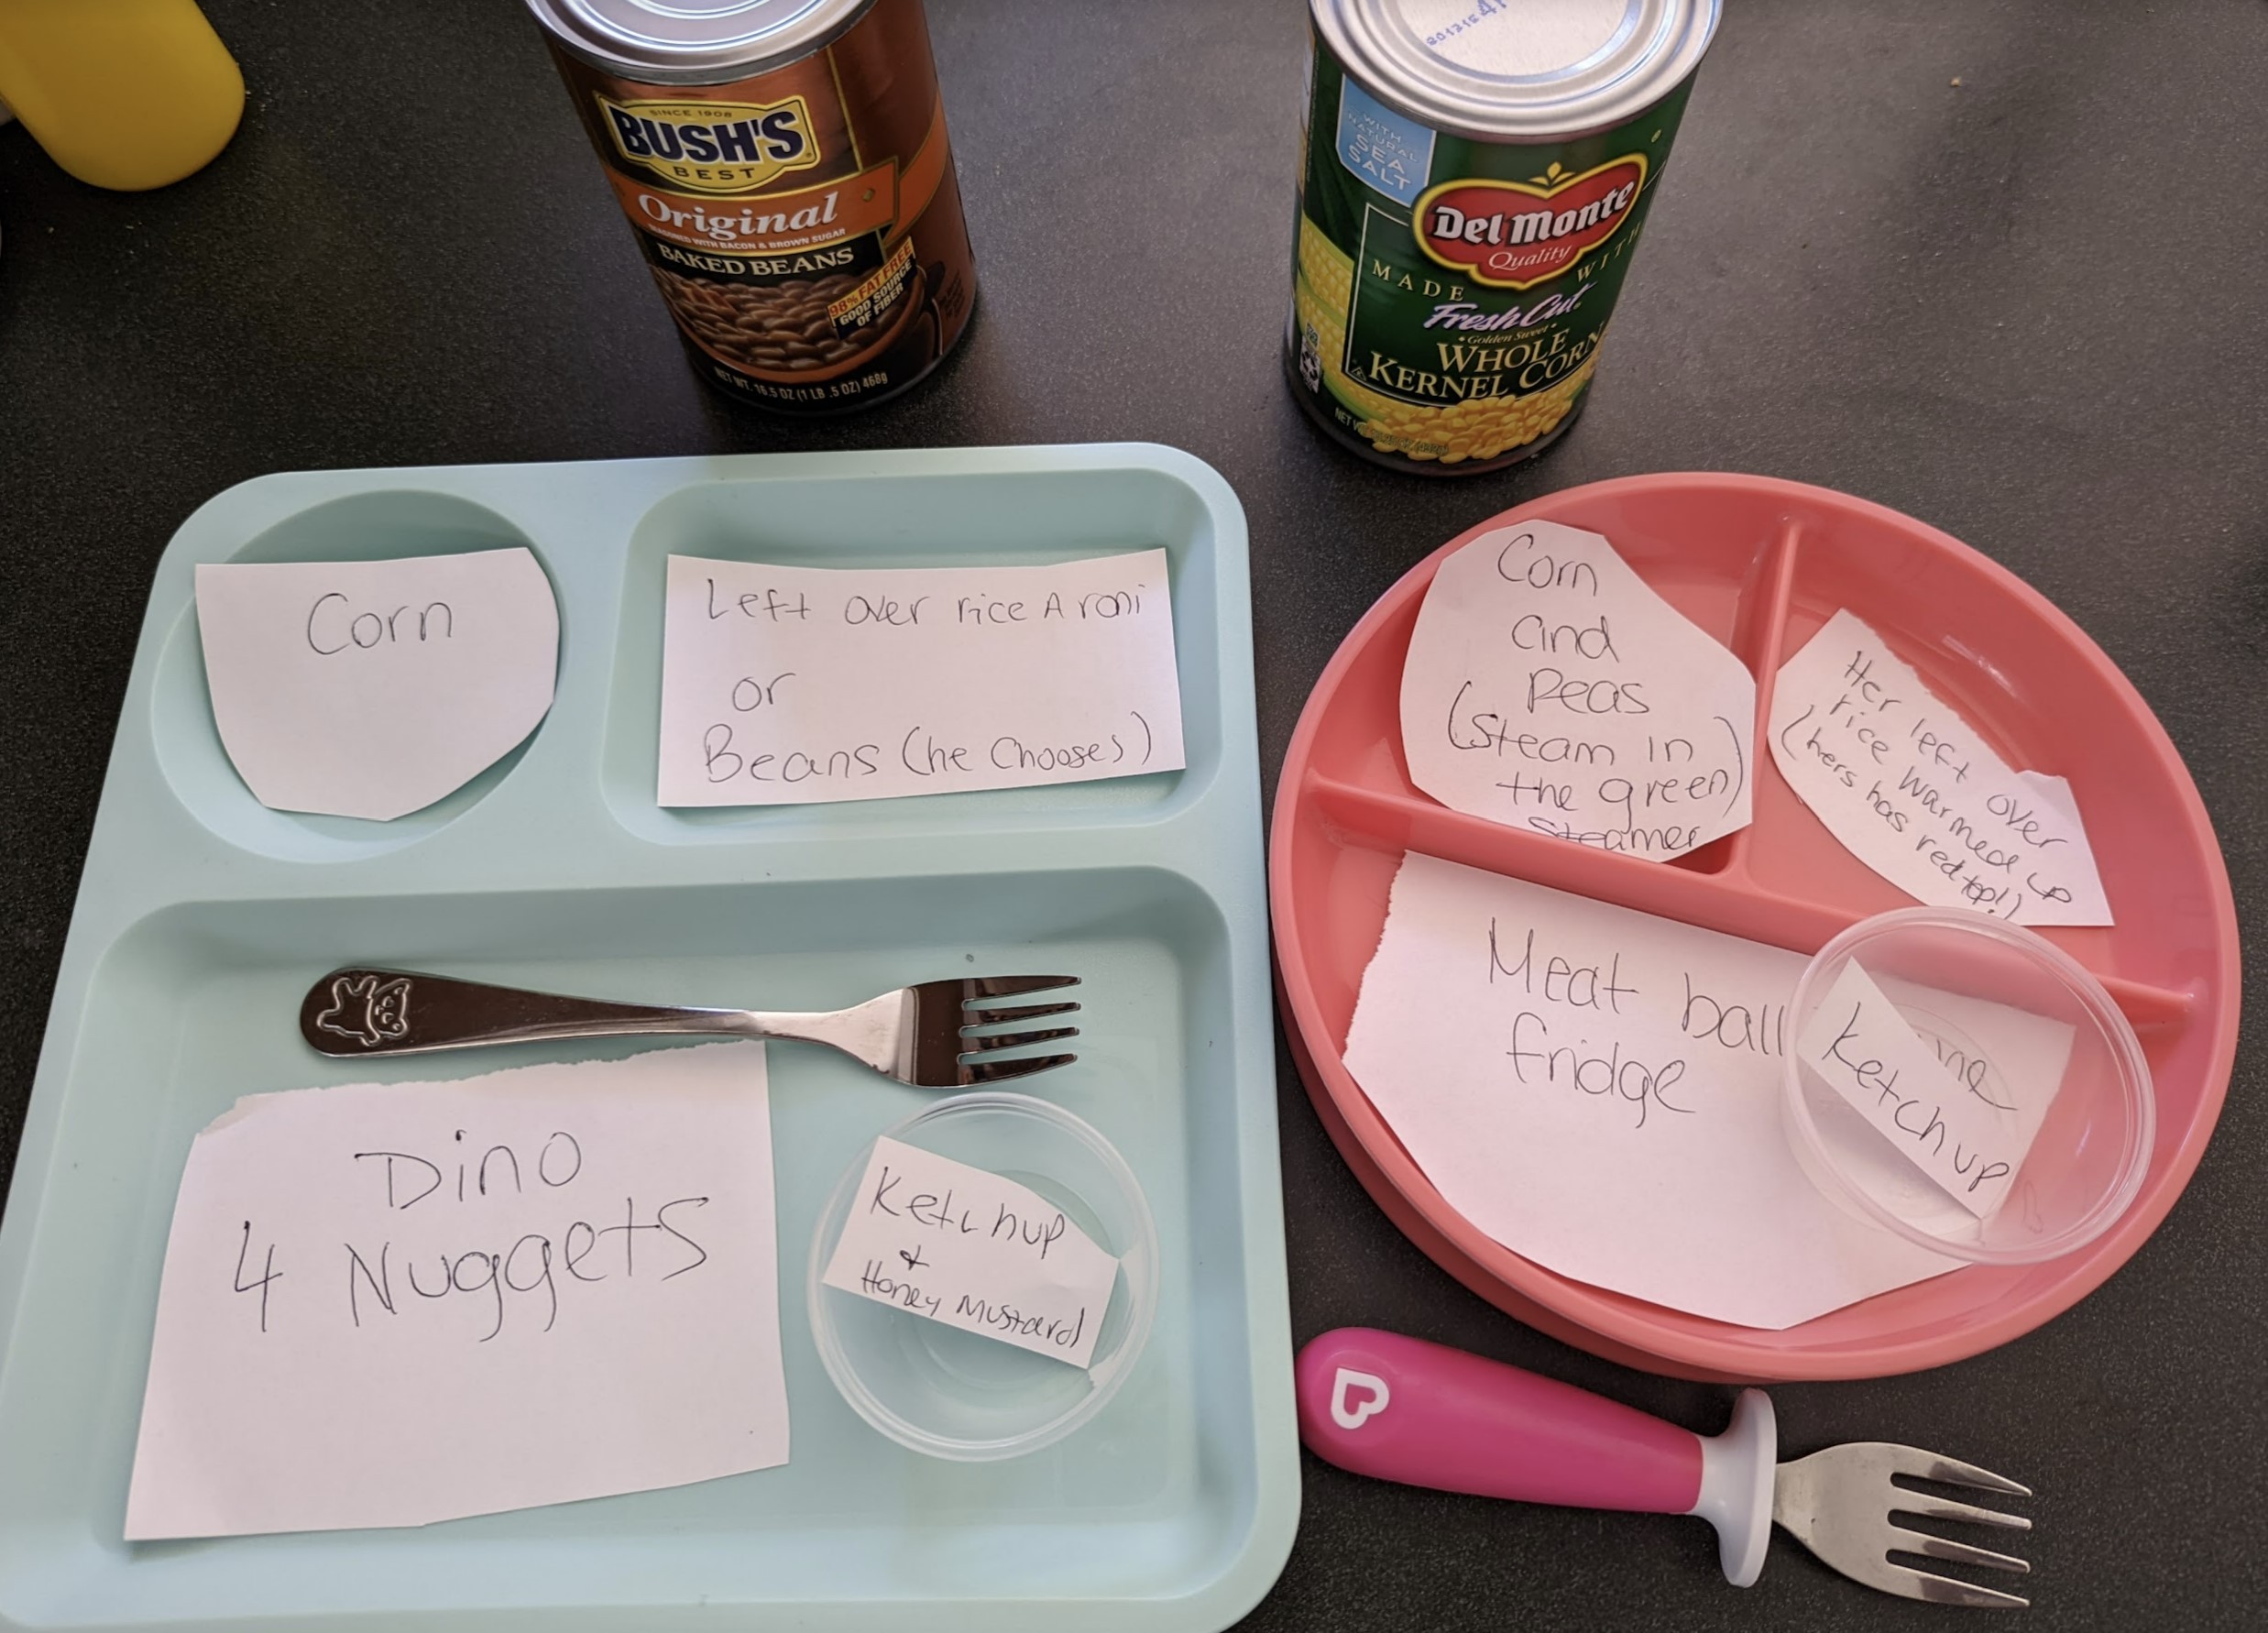 Foto compartilhada por pai mostra as instruções detalhadas deixadas pela esposa (Foto: Reprodução Reddit)